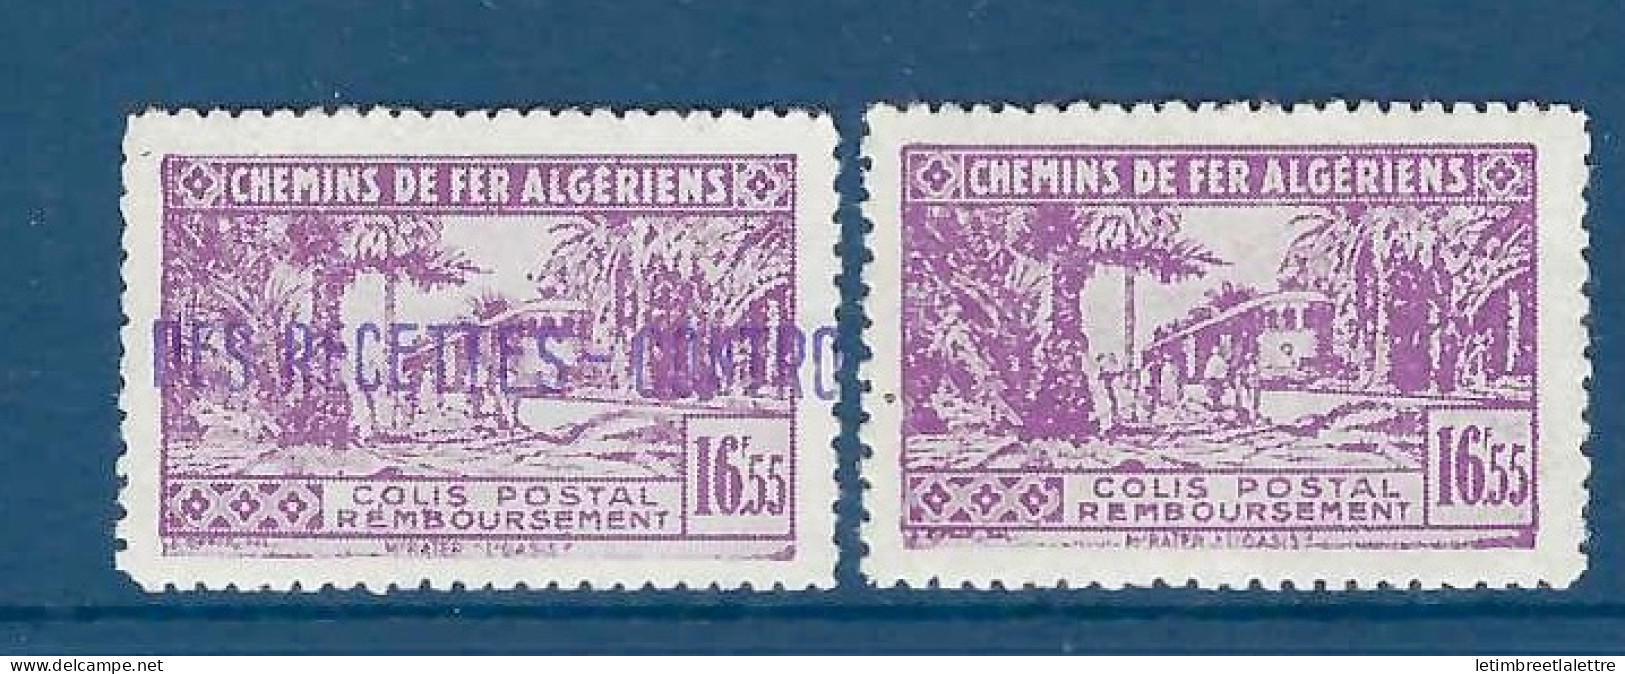 Algérie - Colis Postaux - YT N° 94 * - Neuf Avec Charnière - 1941 1942 - Colis Postaux